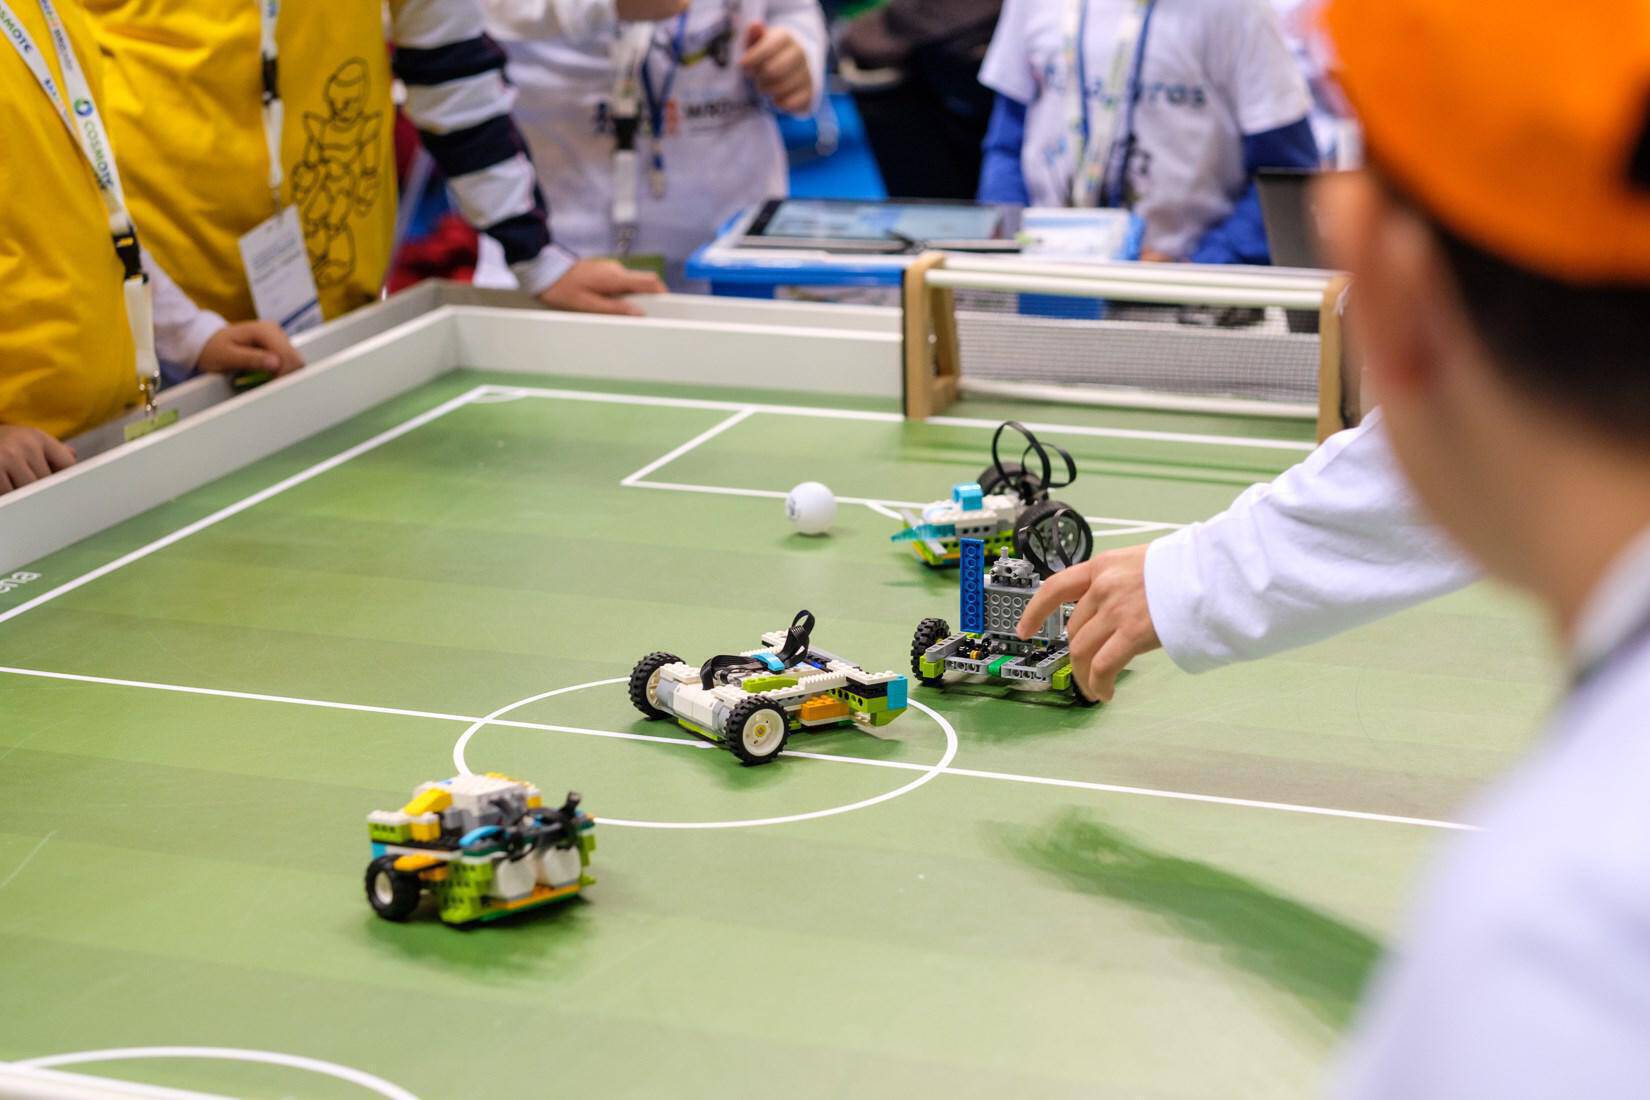 Ξεκινά ο Πανελλήνιος Διαγωνισμός Εκπαιδευτικής Ρομποτικής 2019